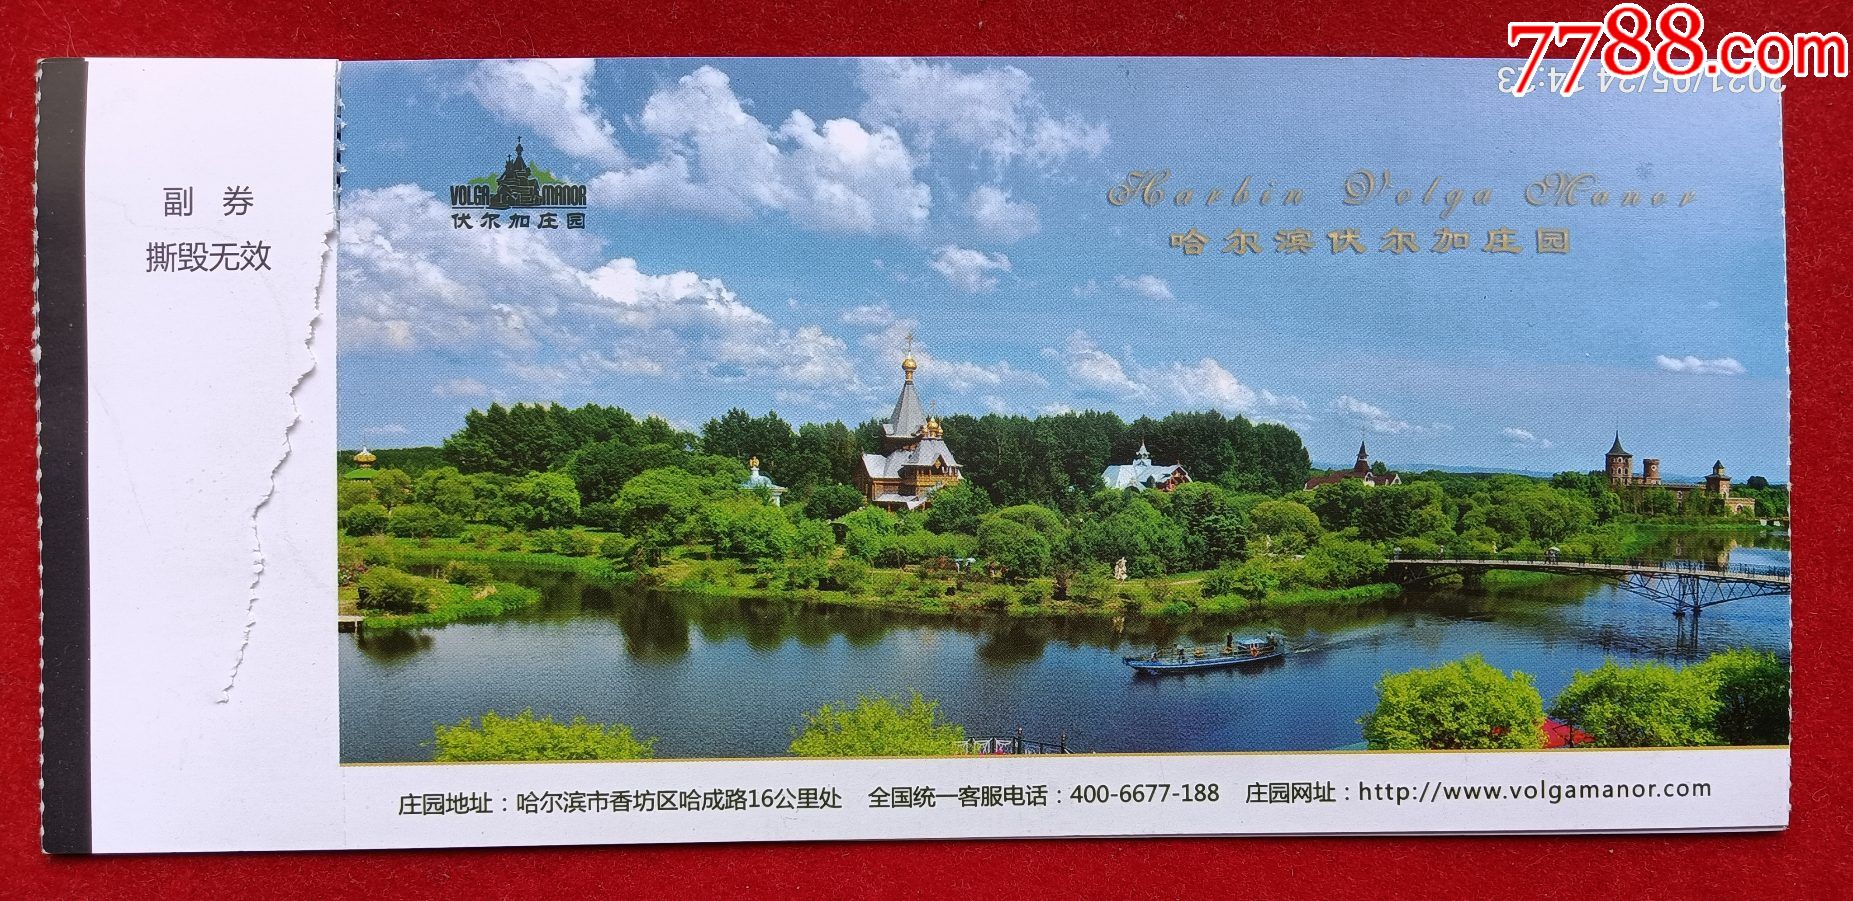 哈尔滨伏尔加庄园门票,两枚连号,有副券,游船(票含).